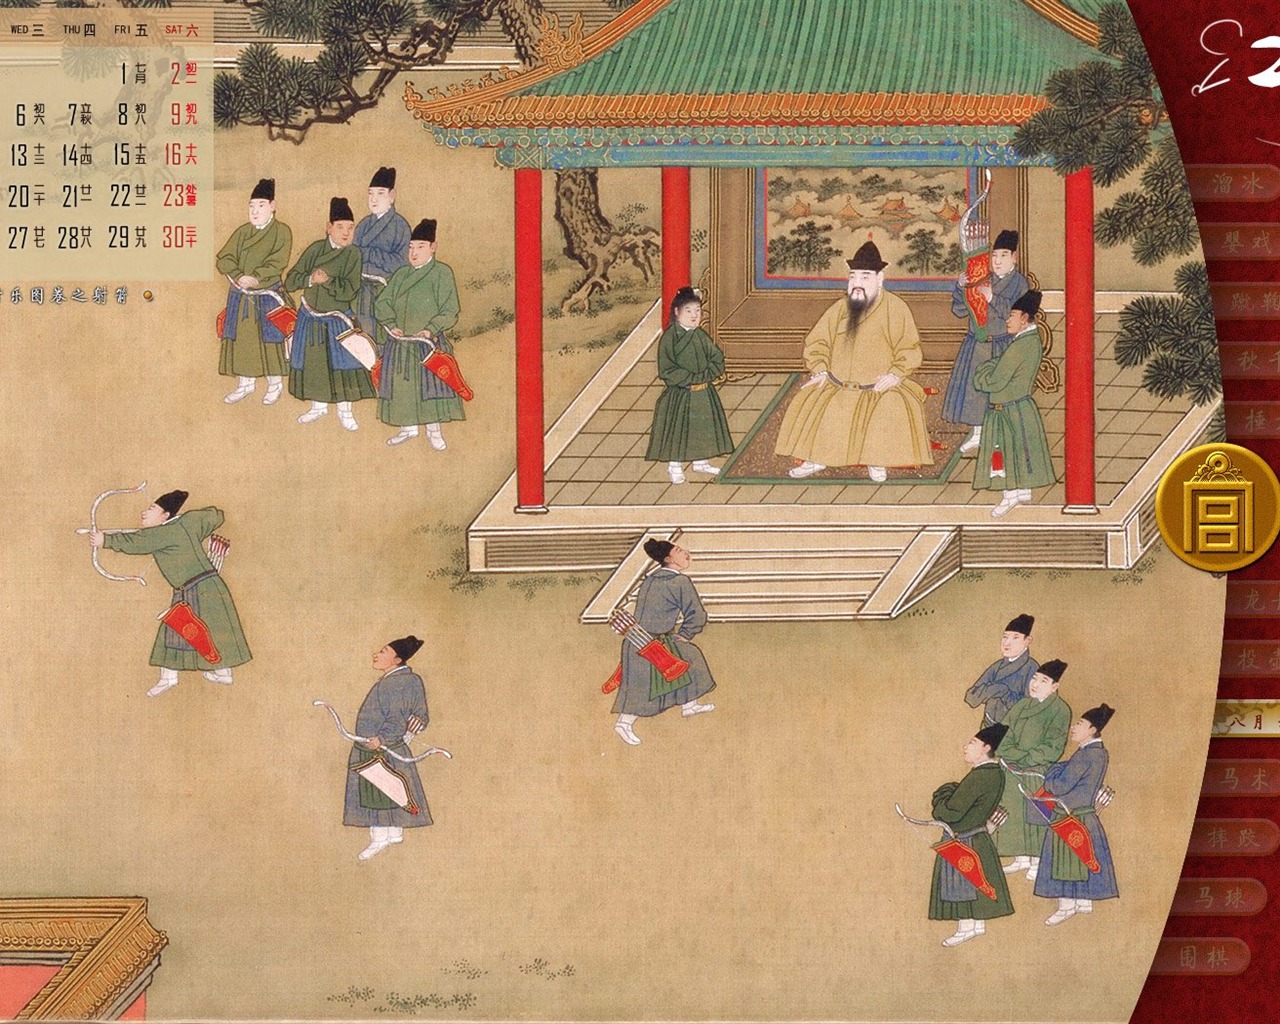 北京故宫博物院 文物展壁纸(二)10 - 1280x1024